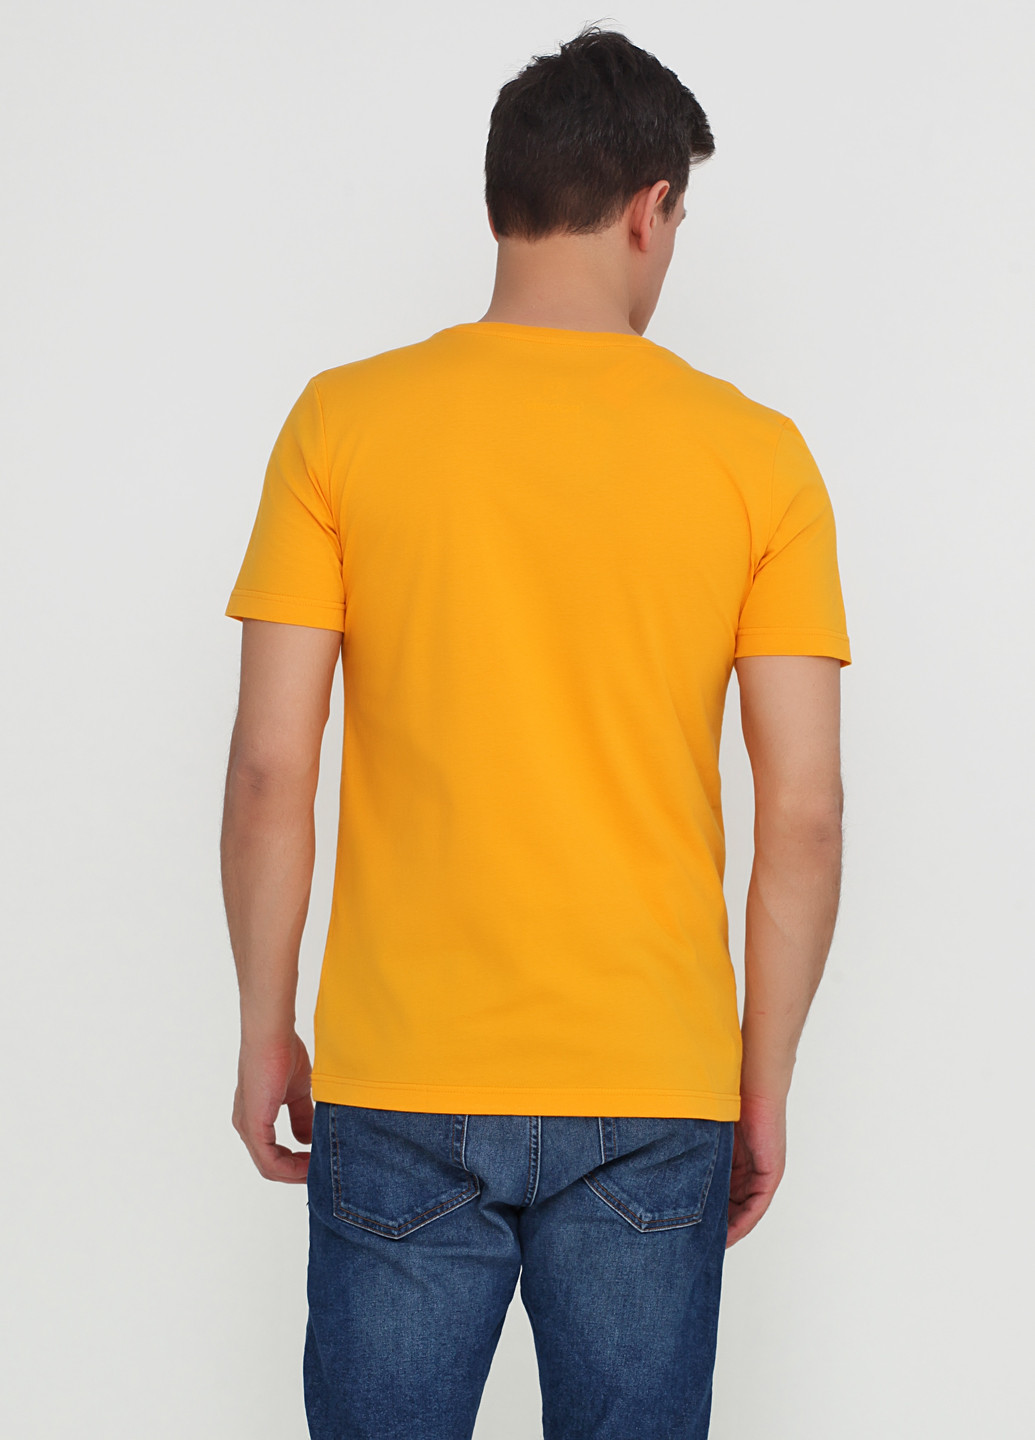 Желтая футболка Power